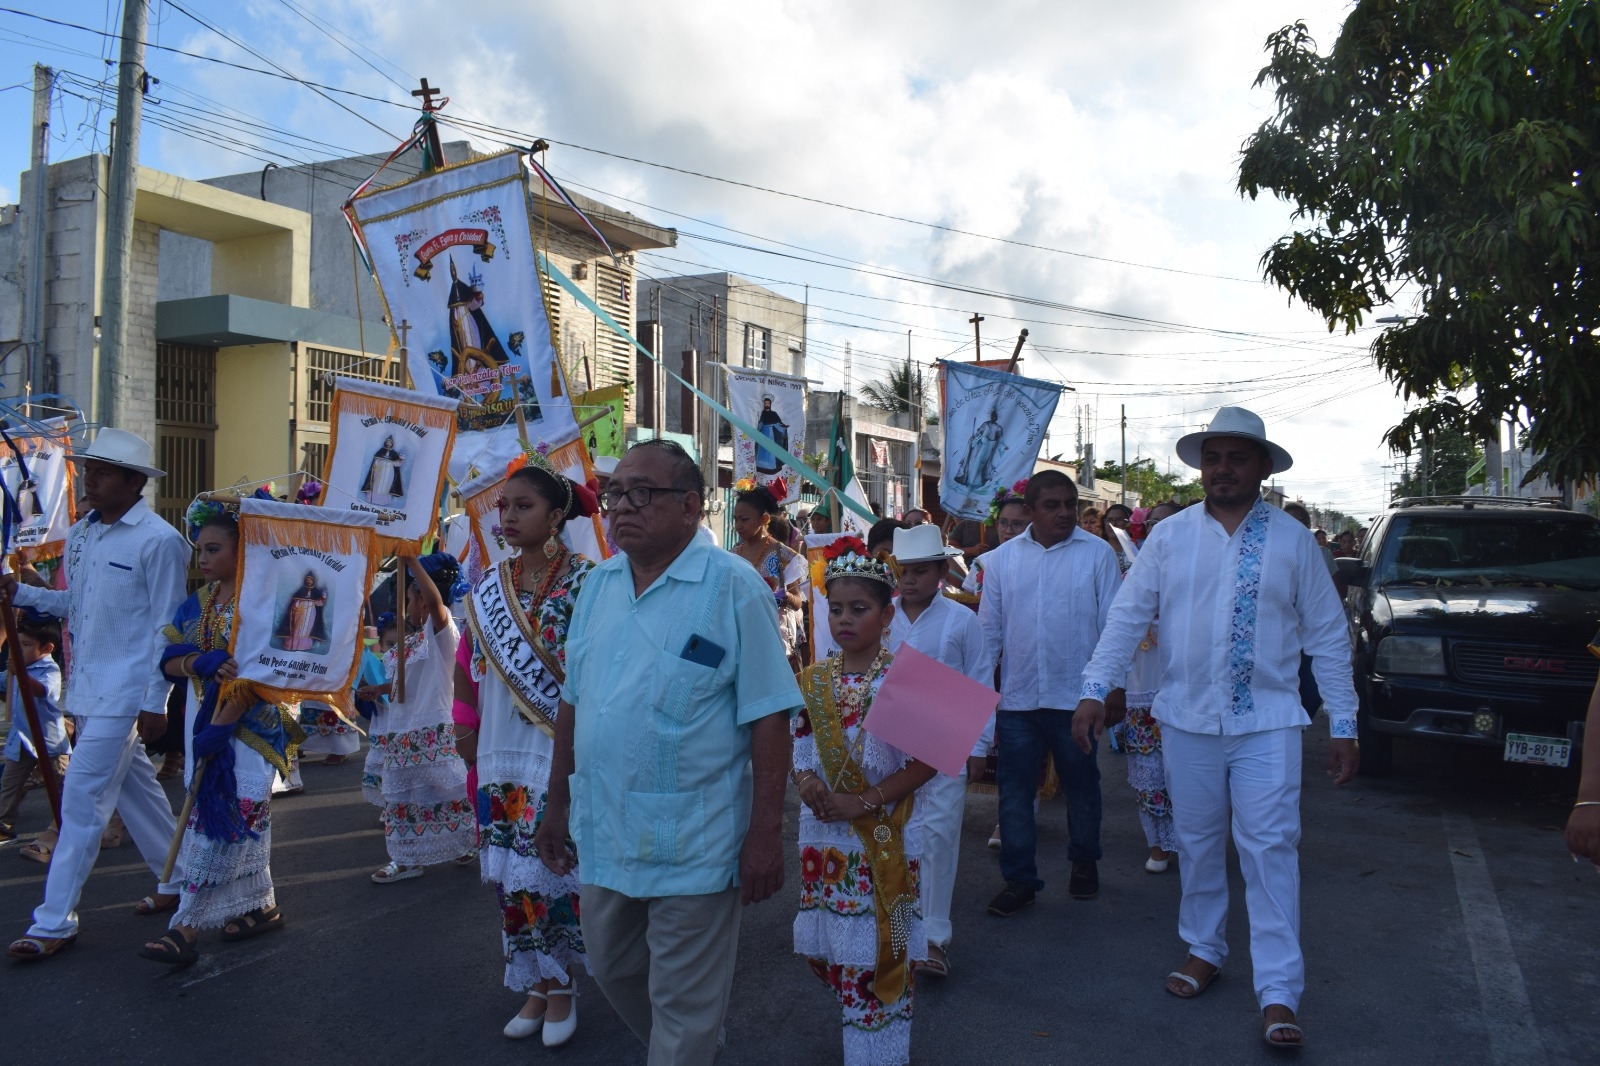 Al son de la charanga, despiden la fiesta de San Telmo, patrono de los pescadores en Progreso